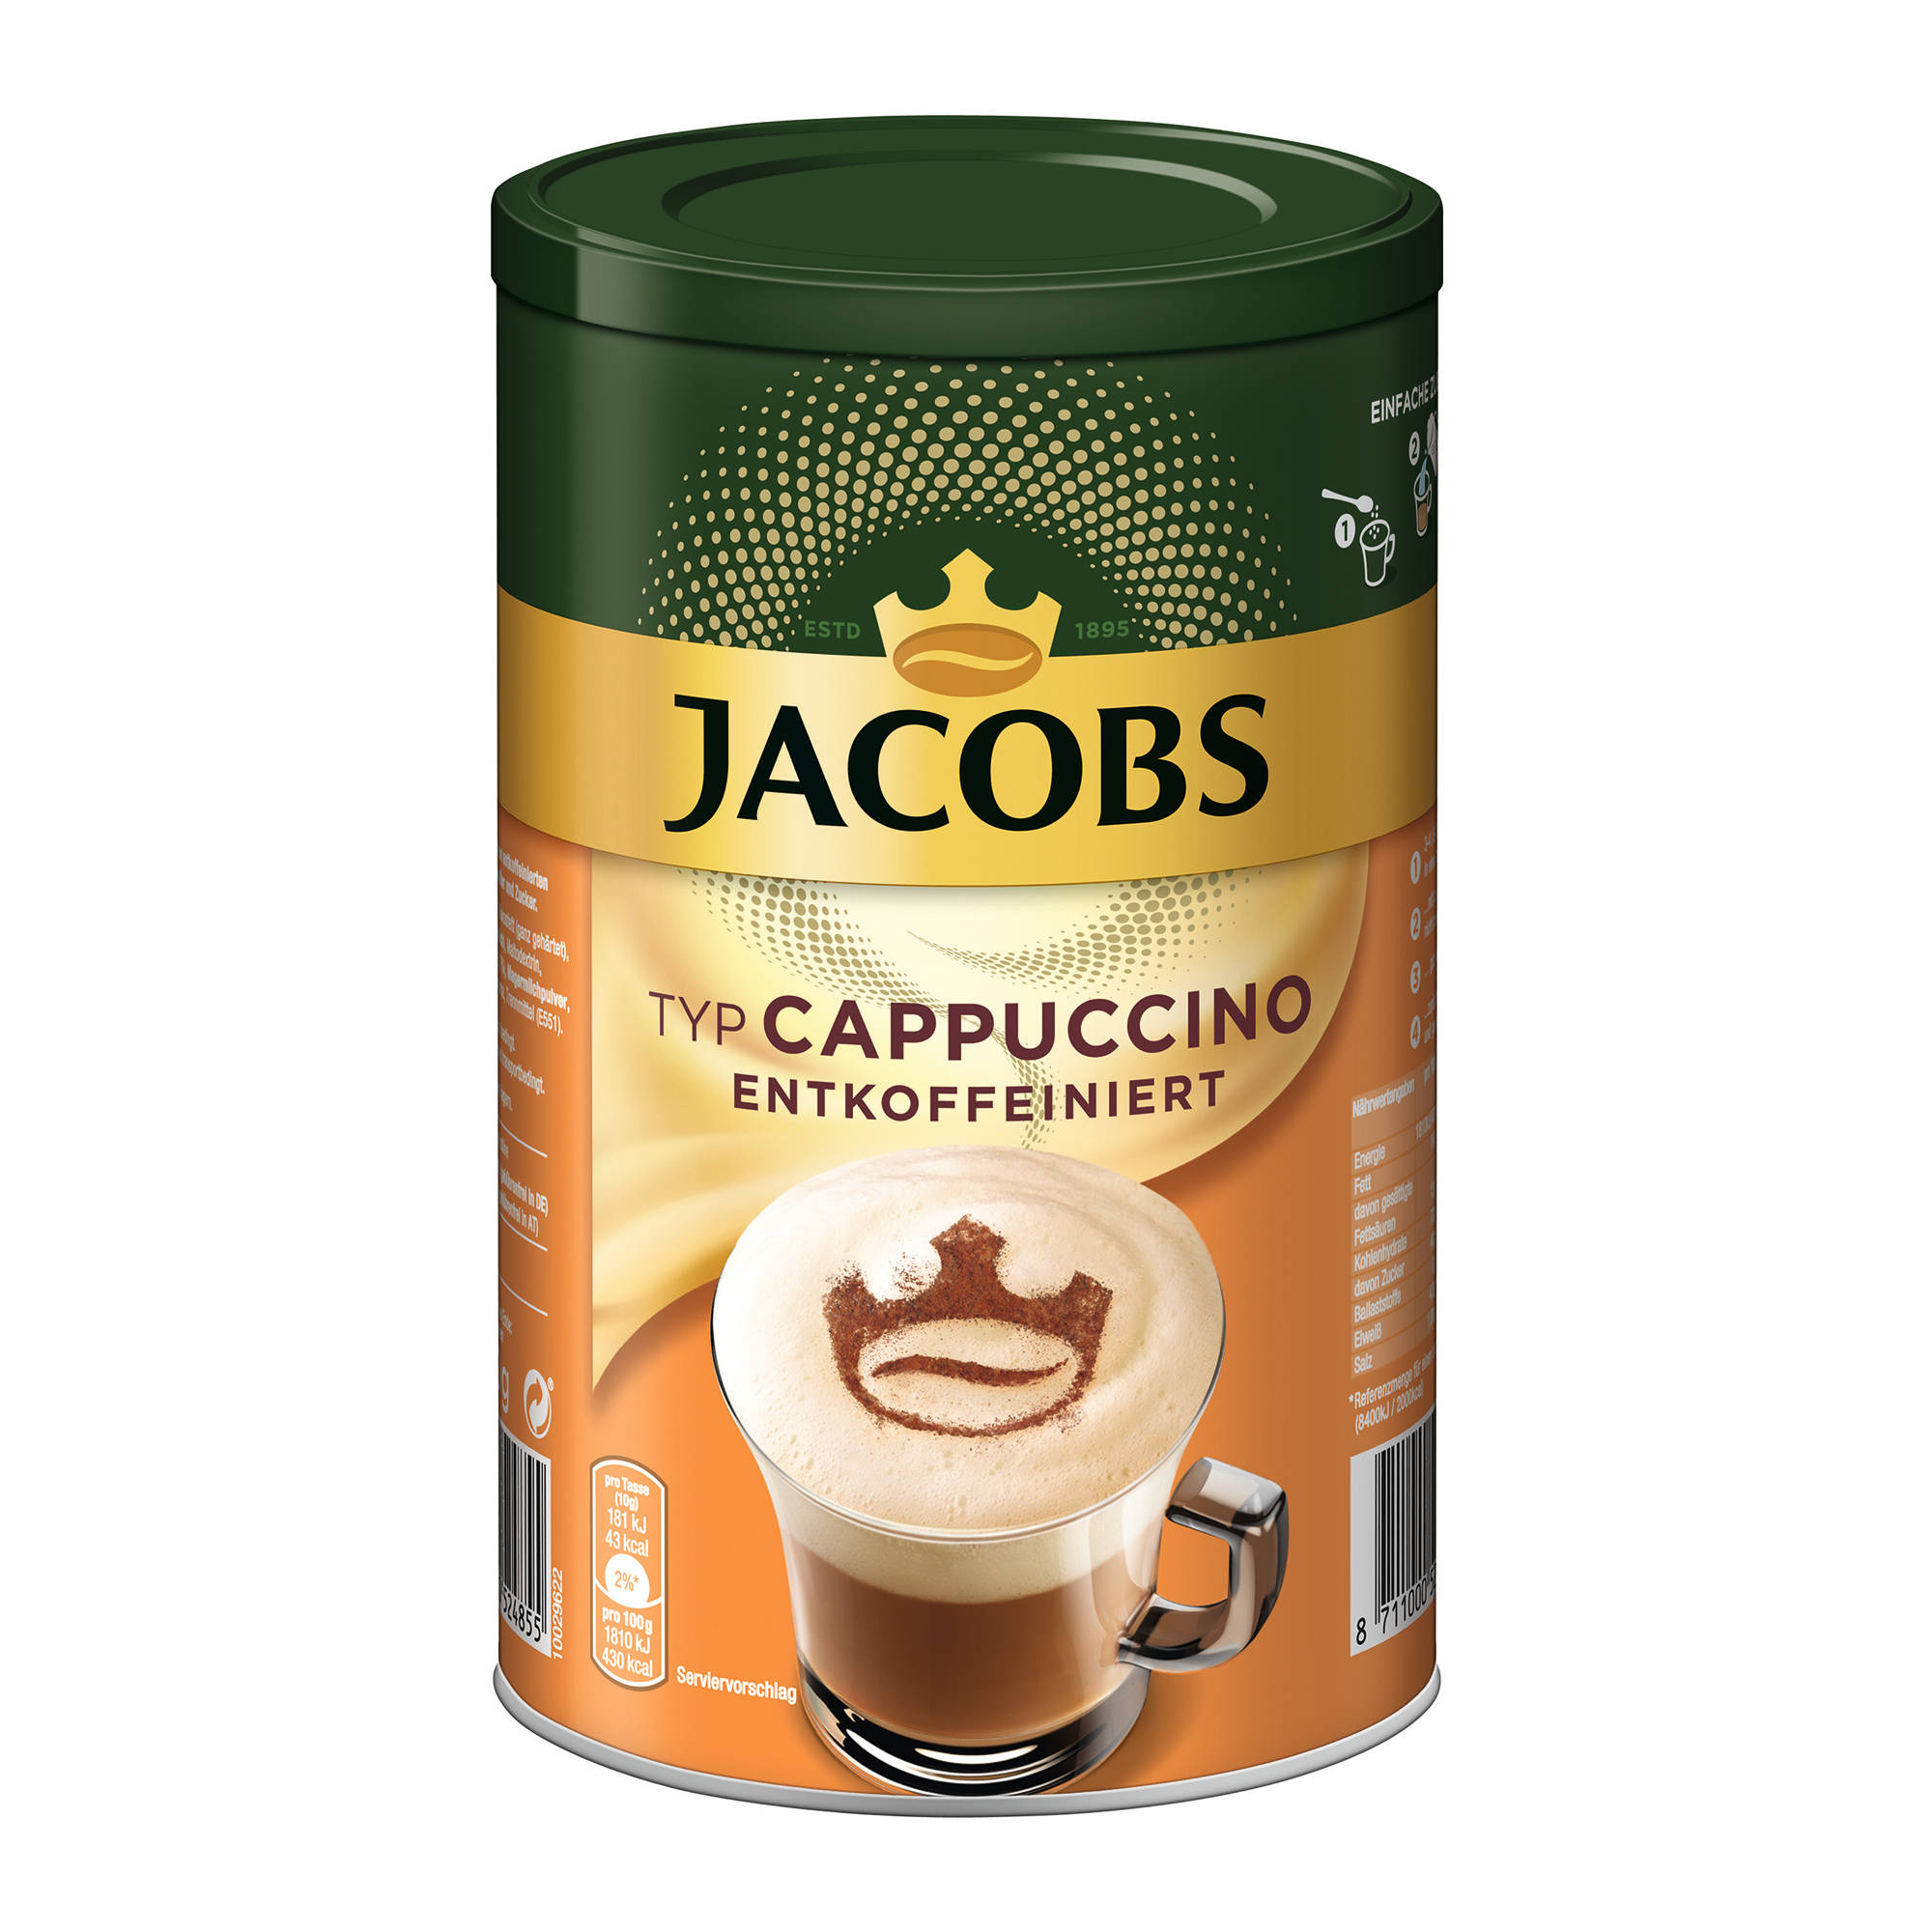 g 8 heißem auflösen) Cappuccino 220 JACOBS entkoffeiniert (In x Typ Instantkaffee Wasser Dosen